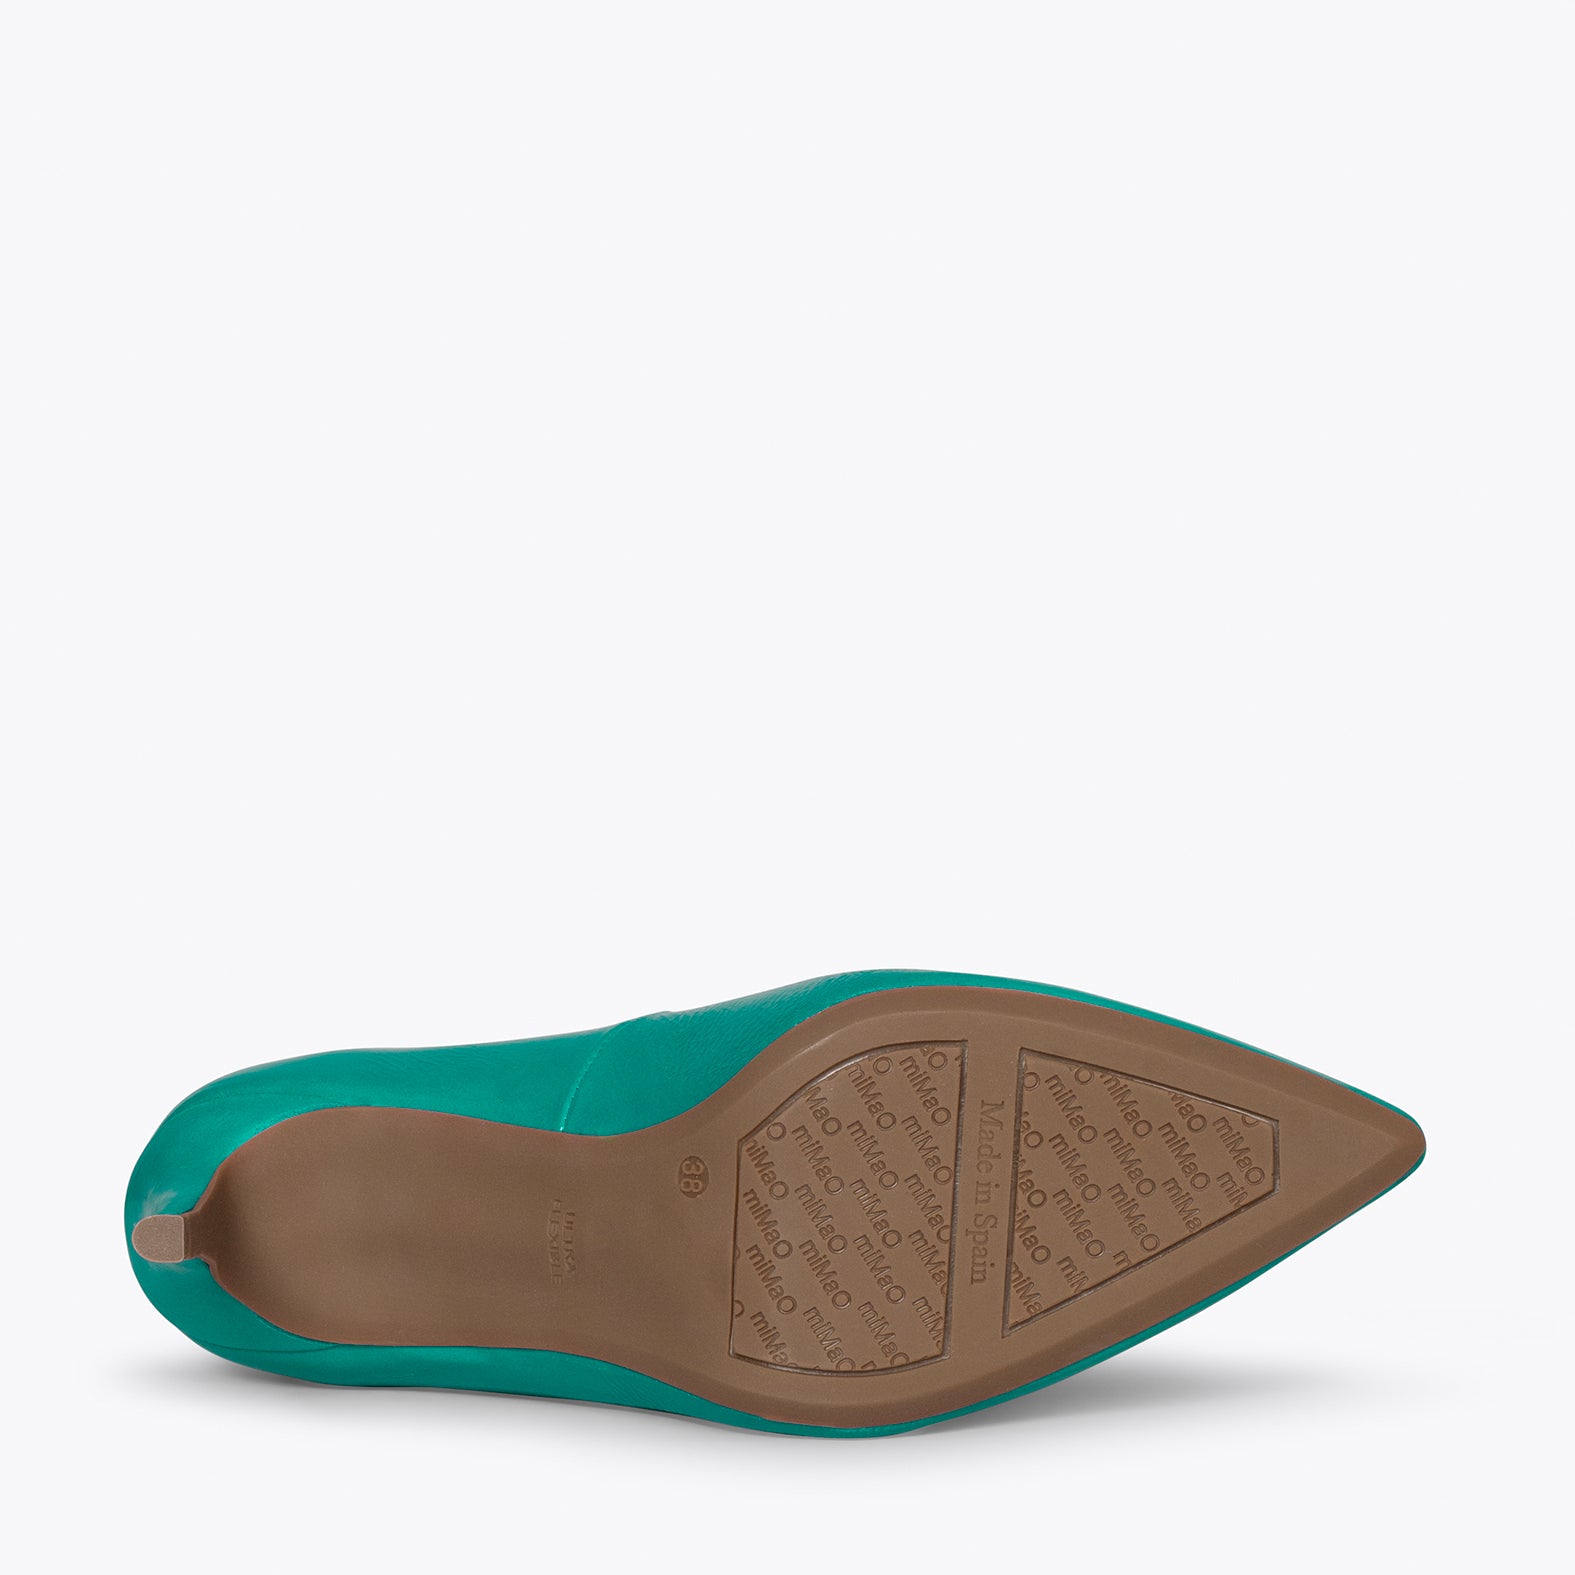 STILETTO - Zapatos de charol TURQUESA con tacón de aguja